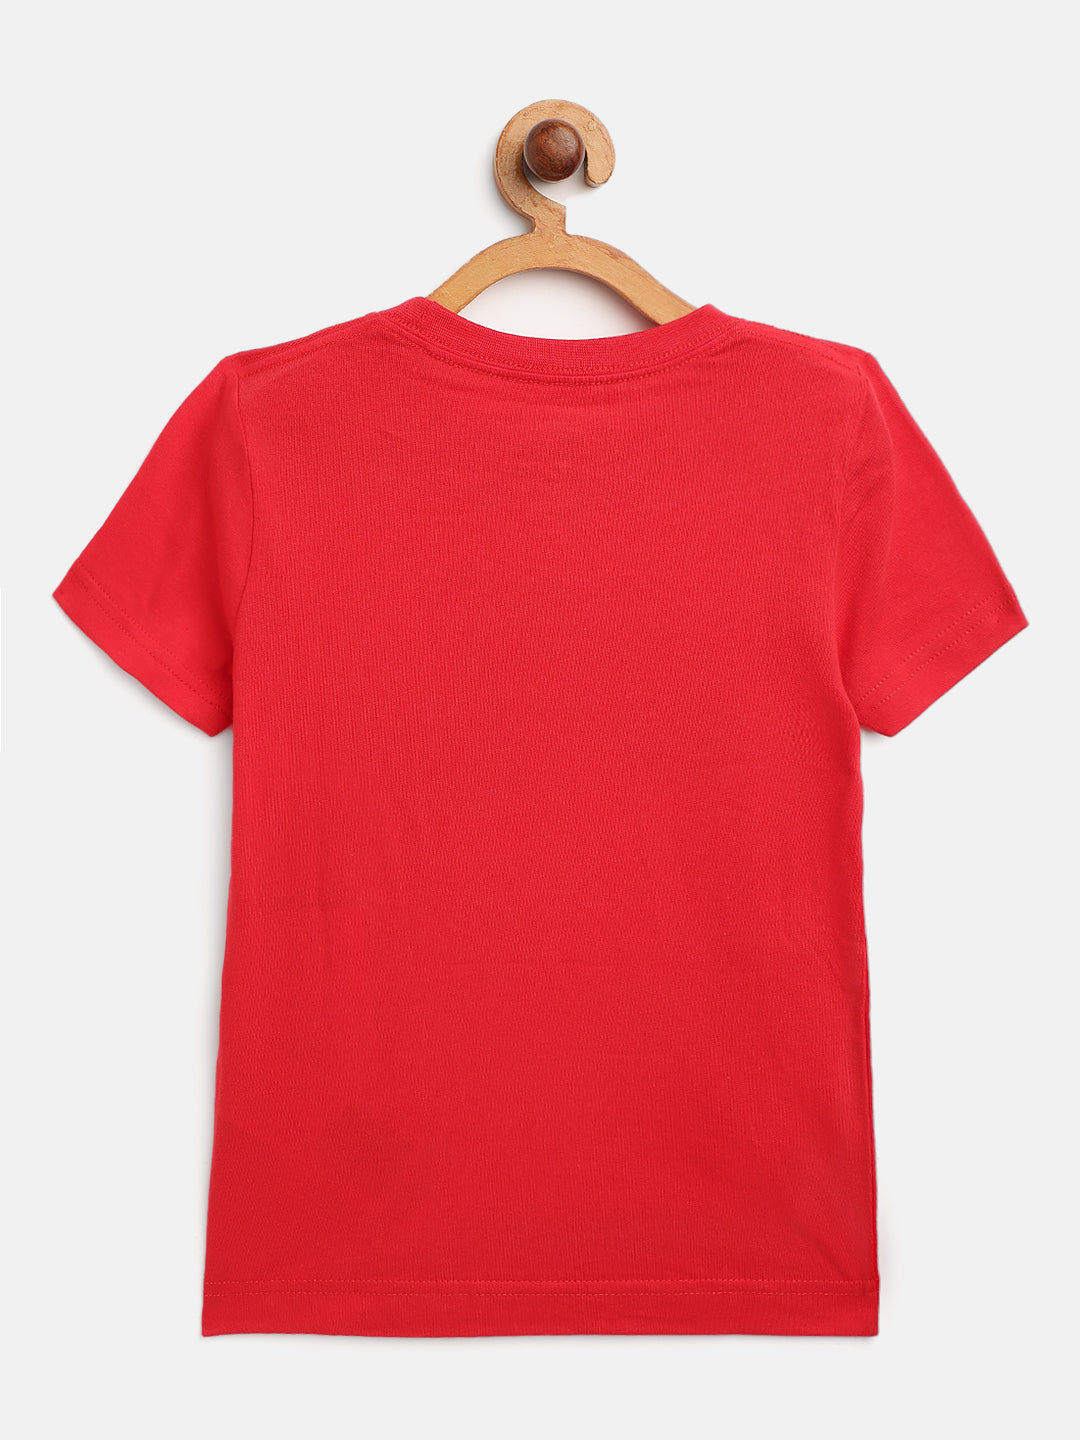 Nike Swoosh Logo T-Shirt T Shirt Nike   